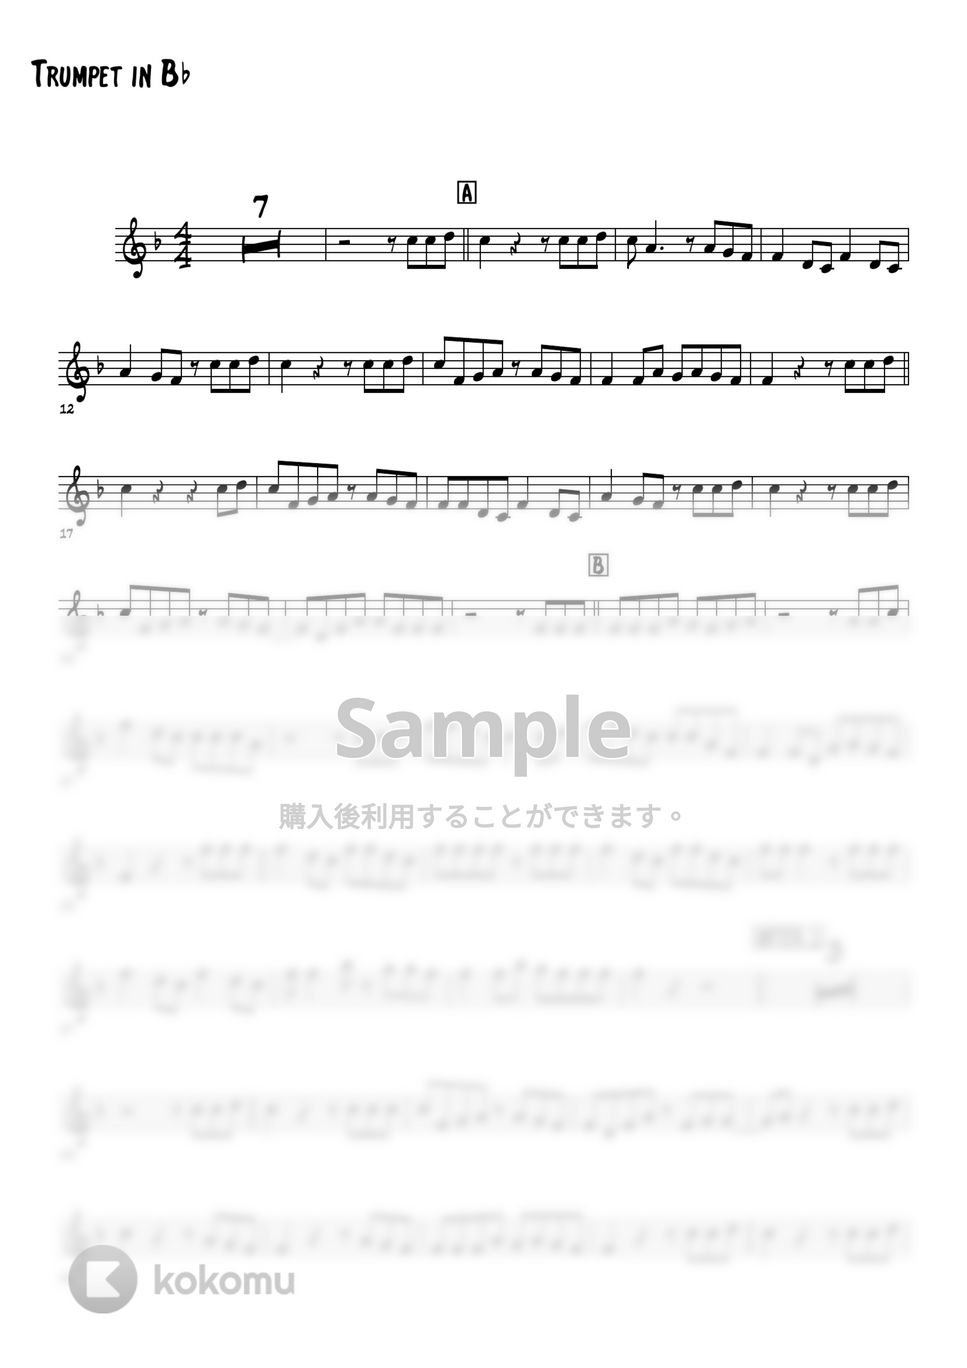 瑛人 - 香水 (トランペットメロディー譜) by 高田将利